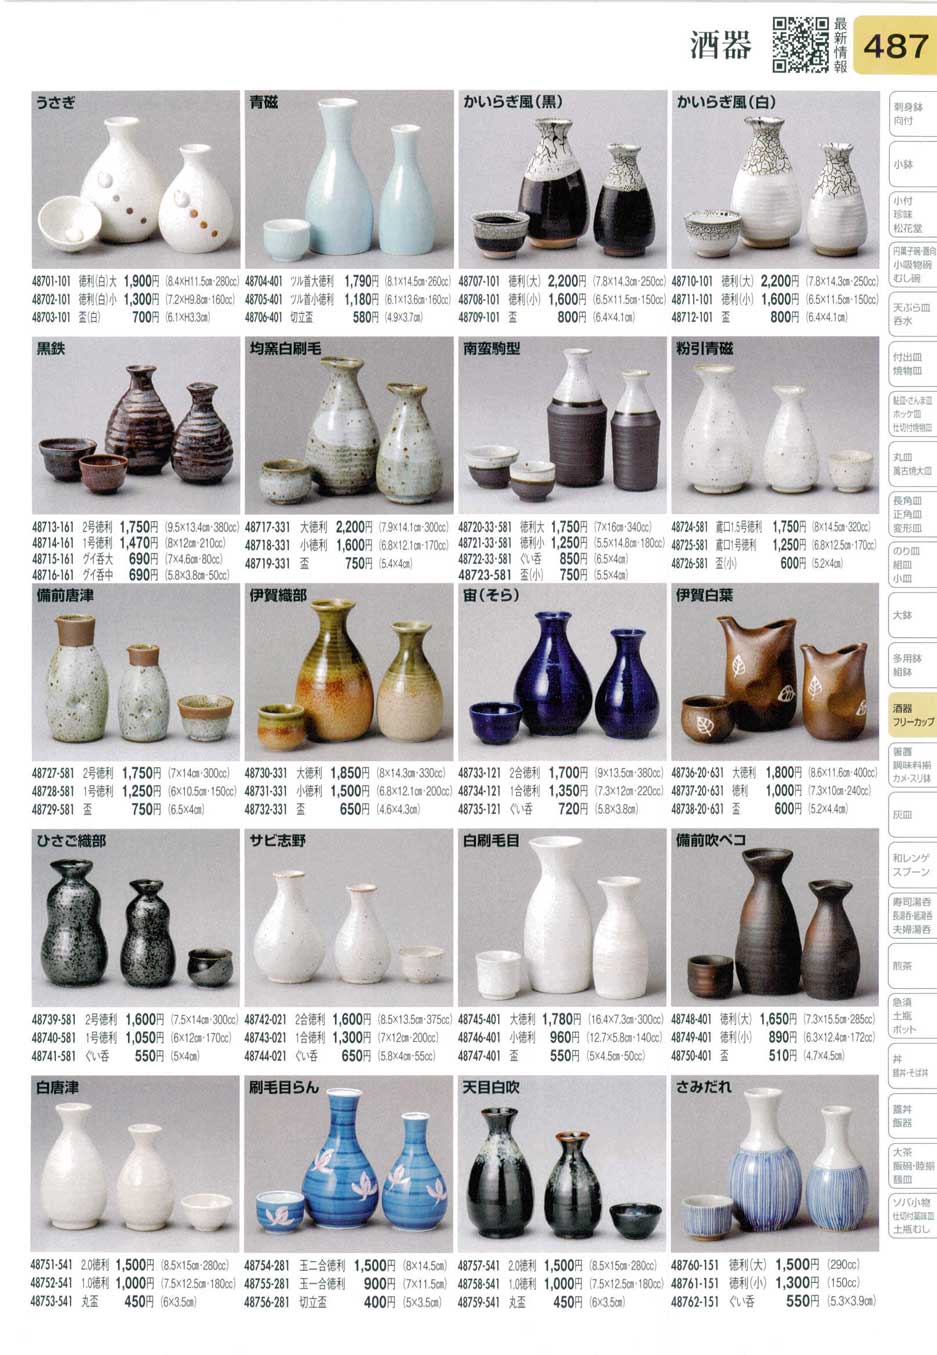 食器 酒器Bottles and Cups for SAKE 陶里３１－487ページ